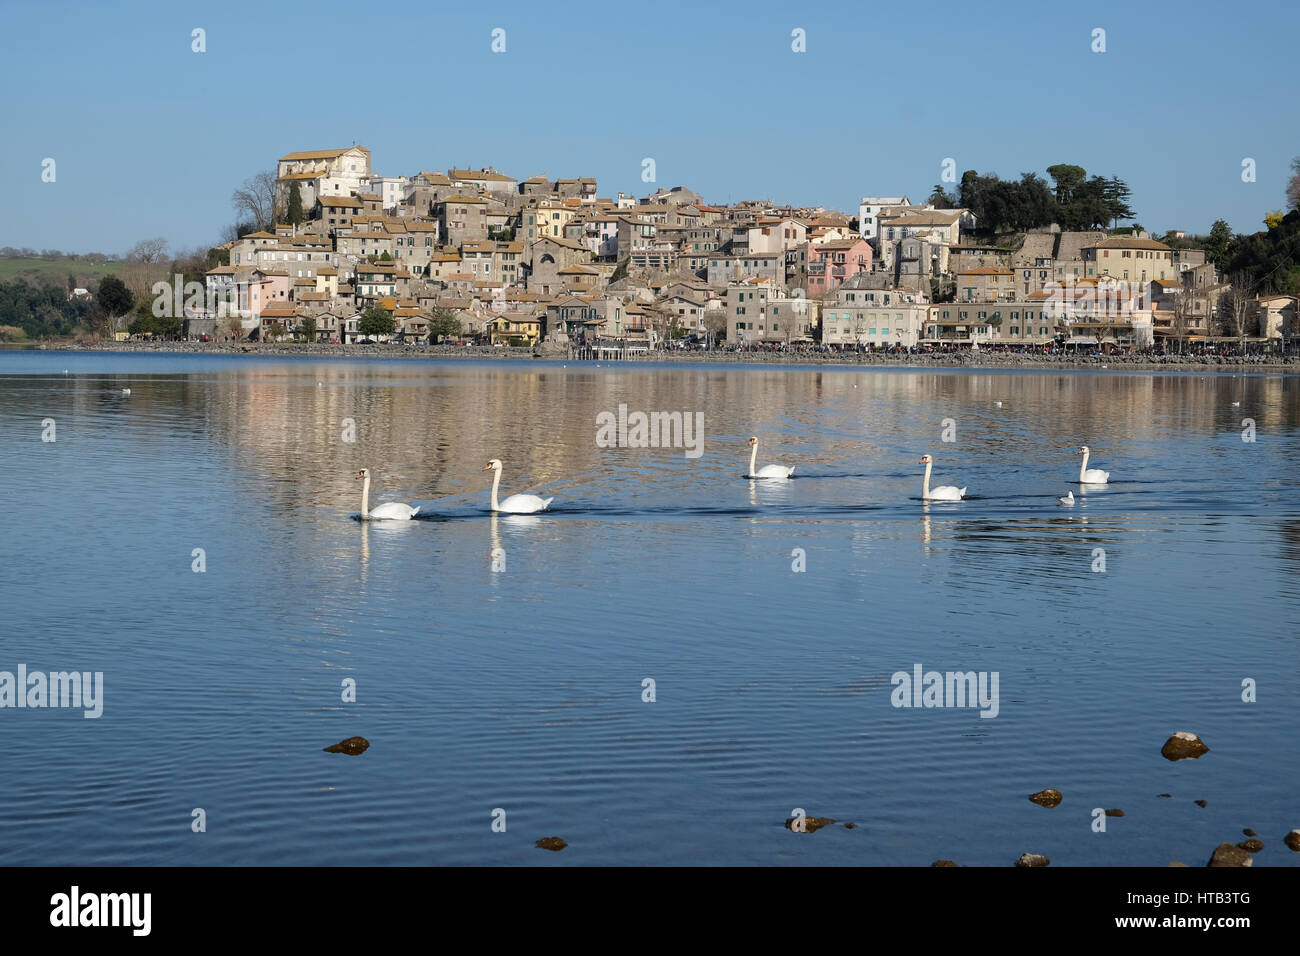 Carpi, une petite ville sur le lac de Bracciano, près de Rome Banque D'Images